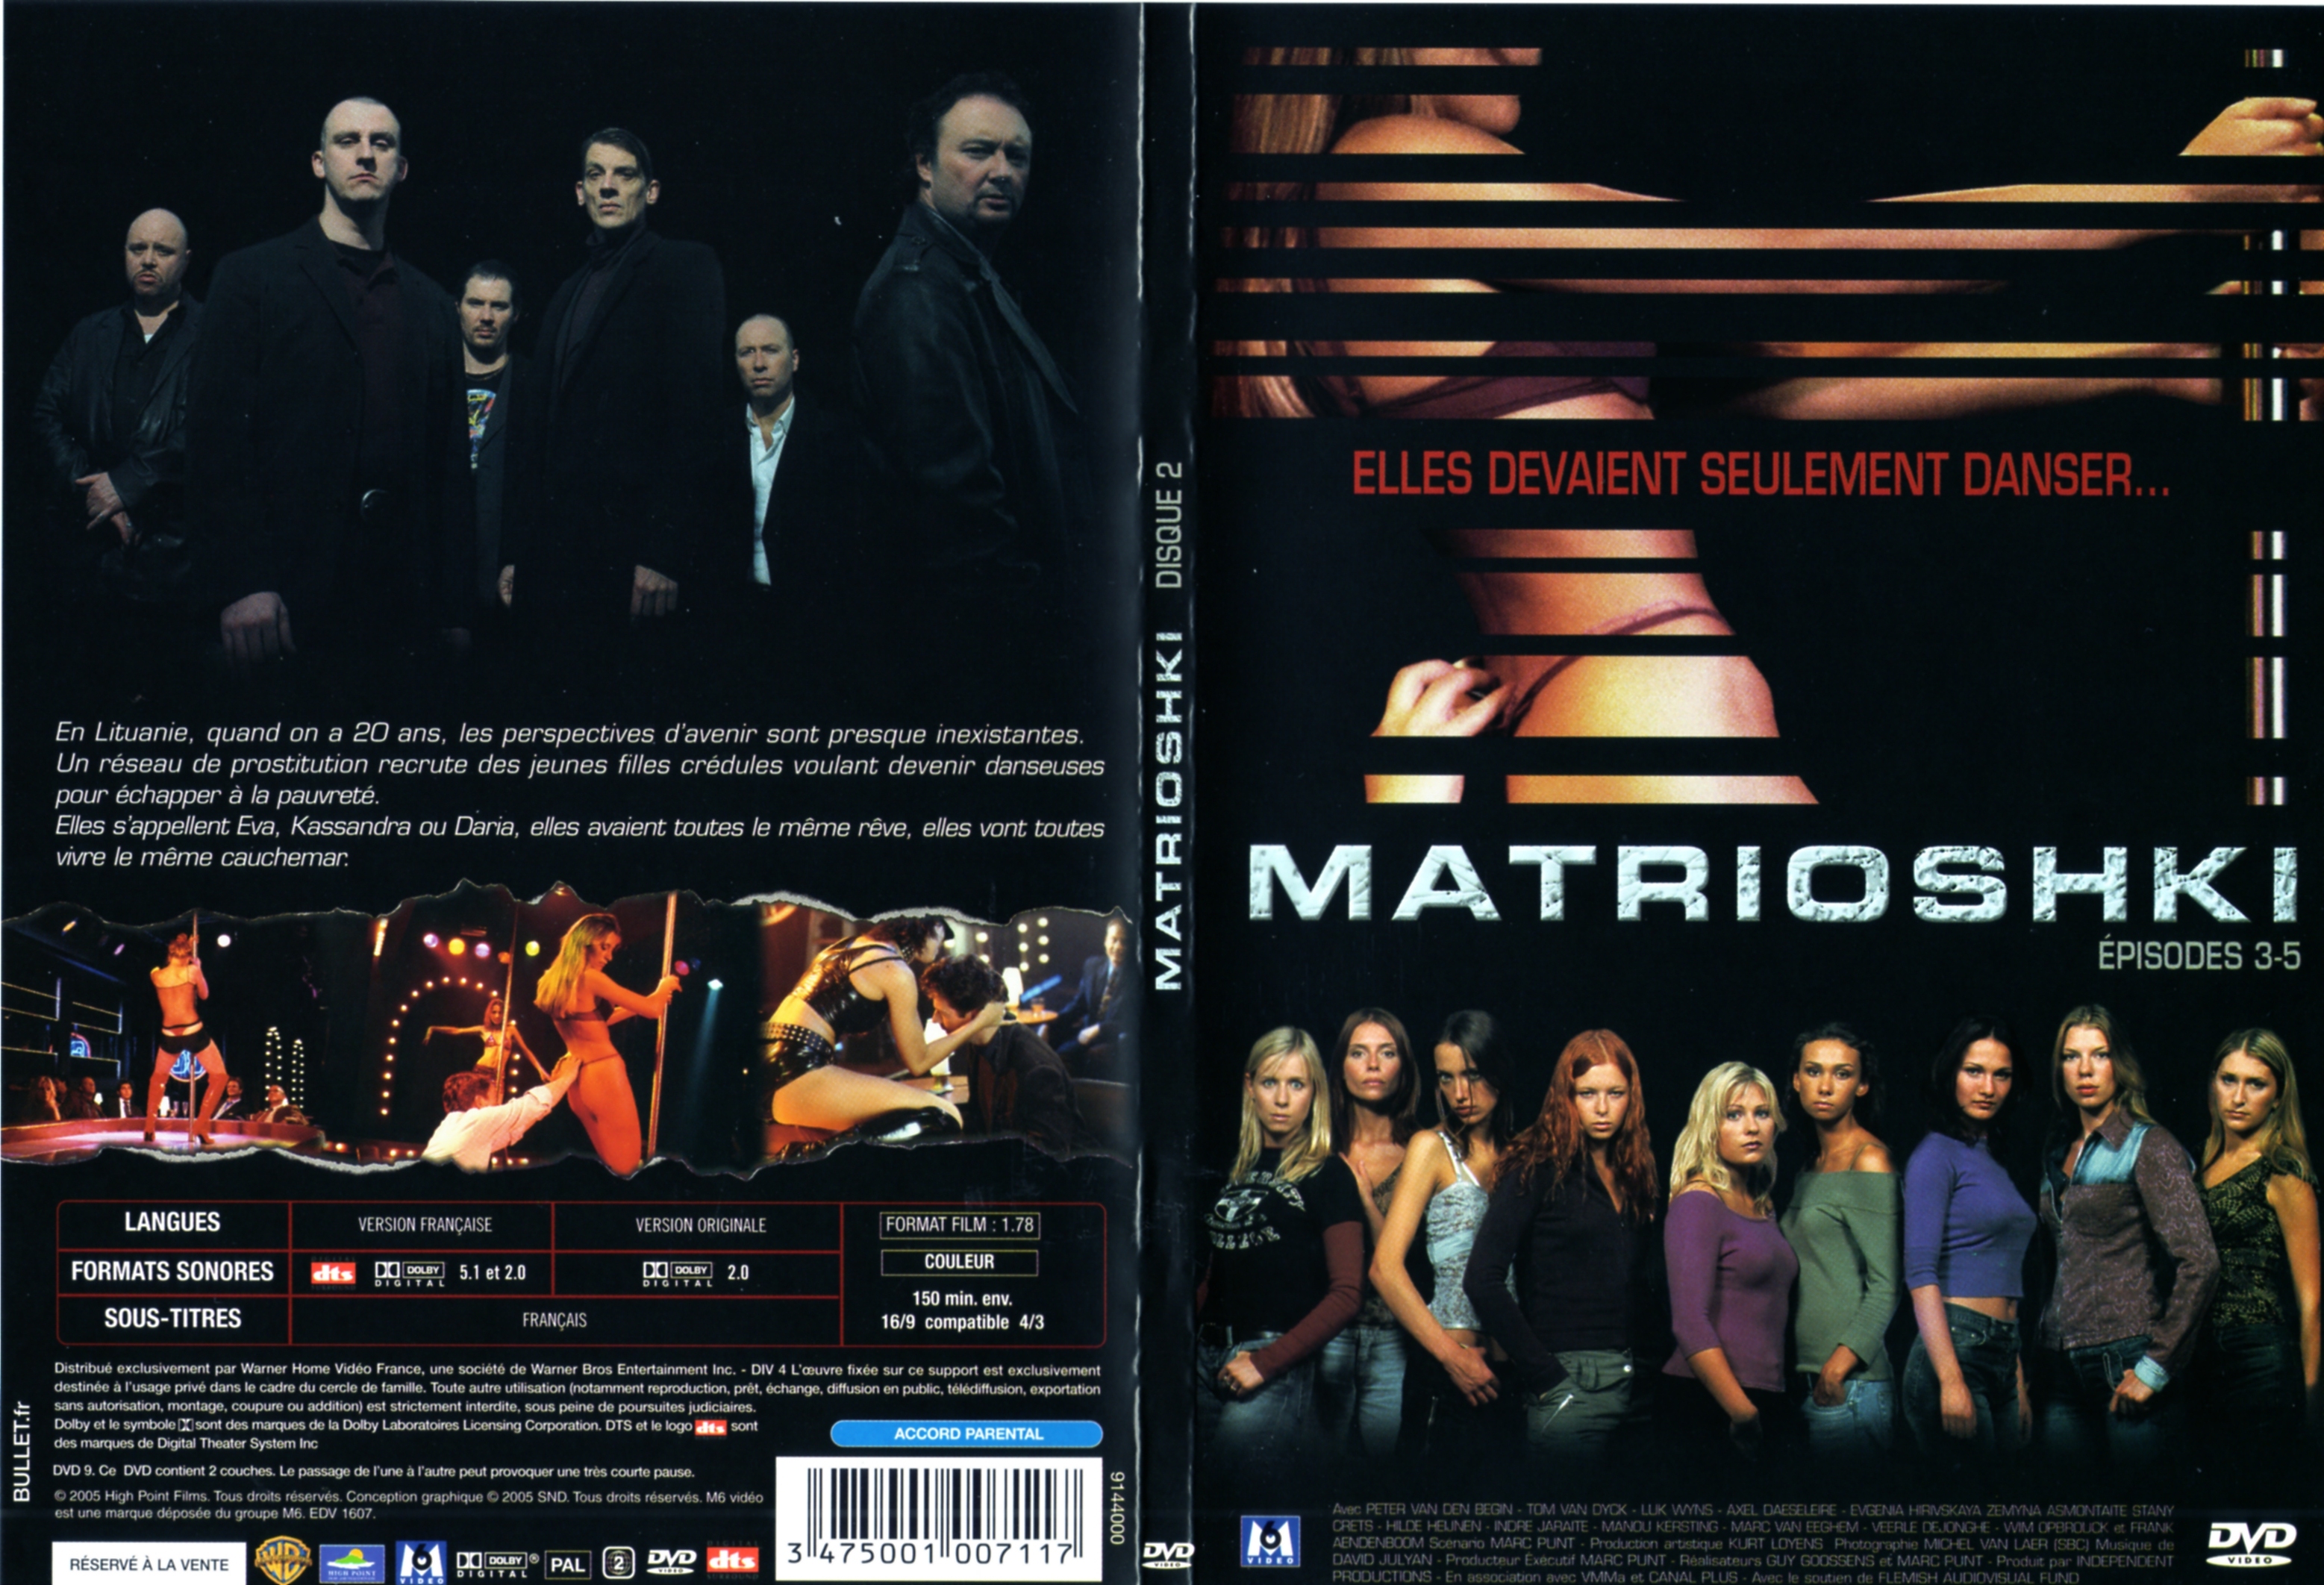 Jaquette DVD Matrioshki Saison 1 vol 2